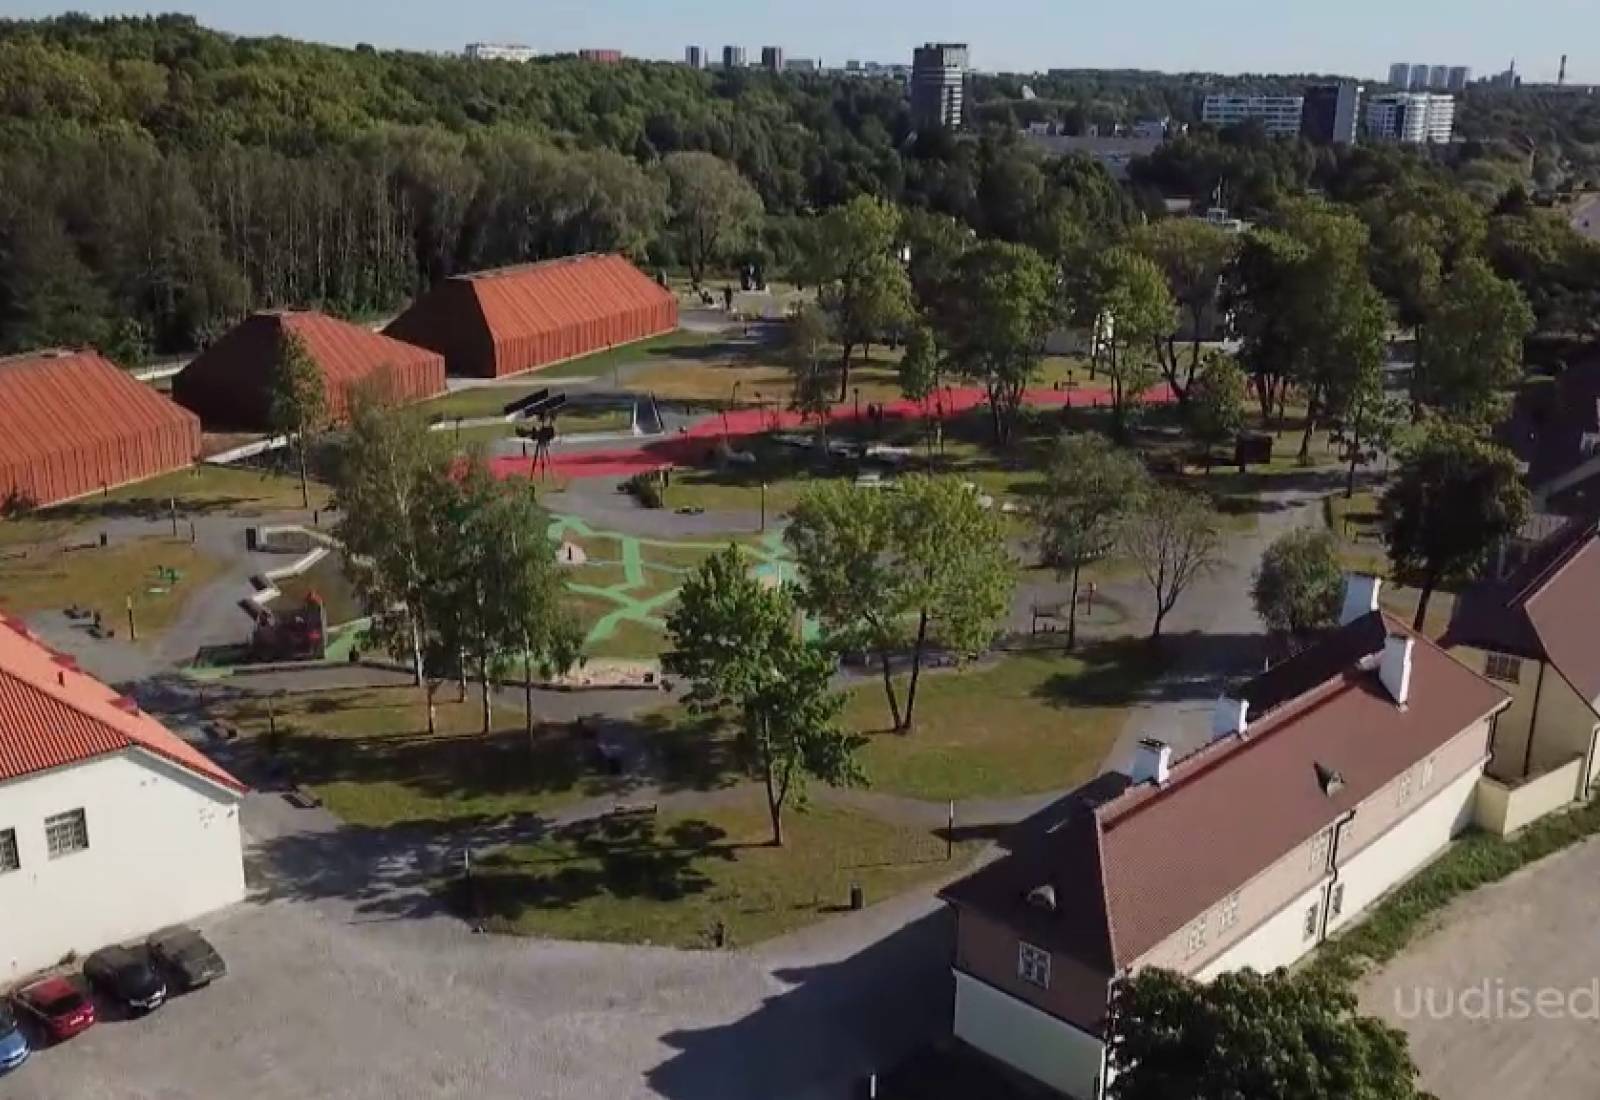 VIDEO! Eesti ajaloomuuseumi Maarjamäe loss pakub külastajatele palju põnevat avastamist